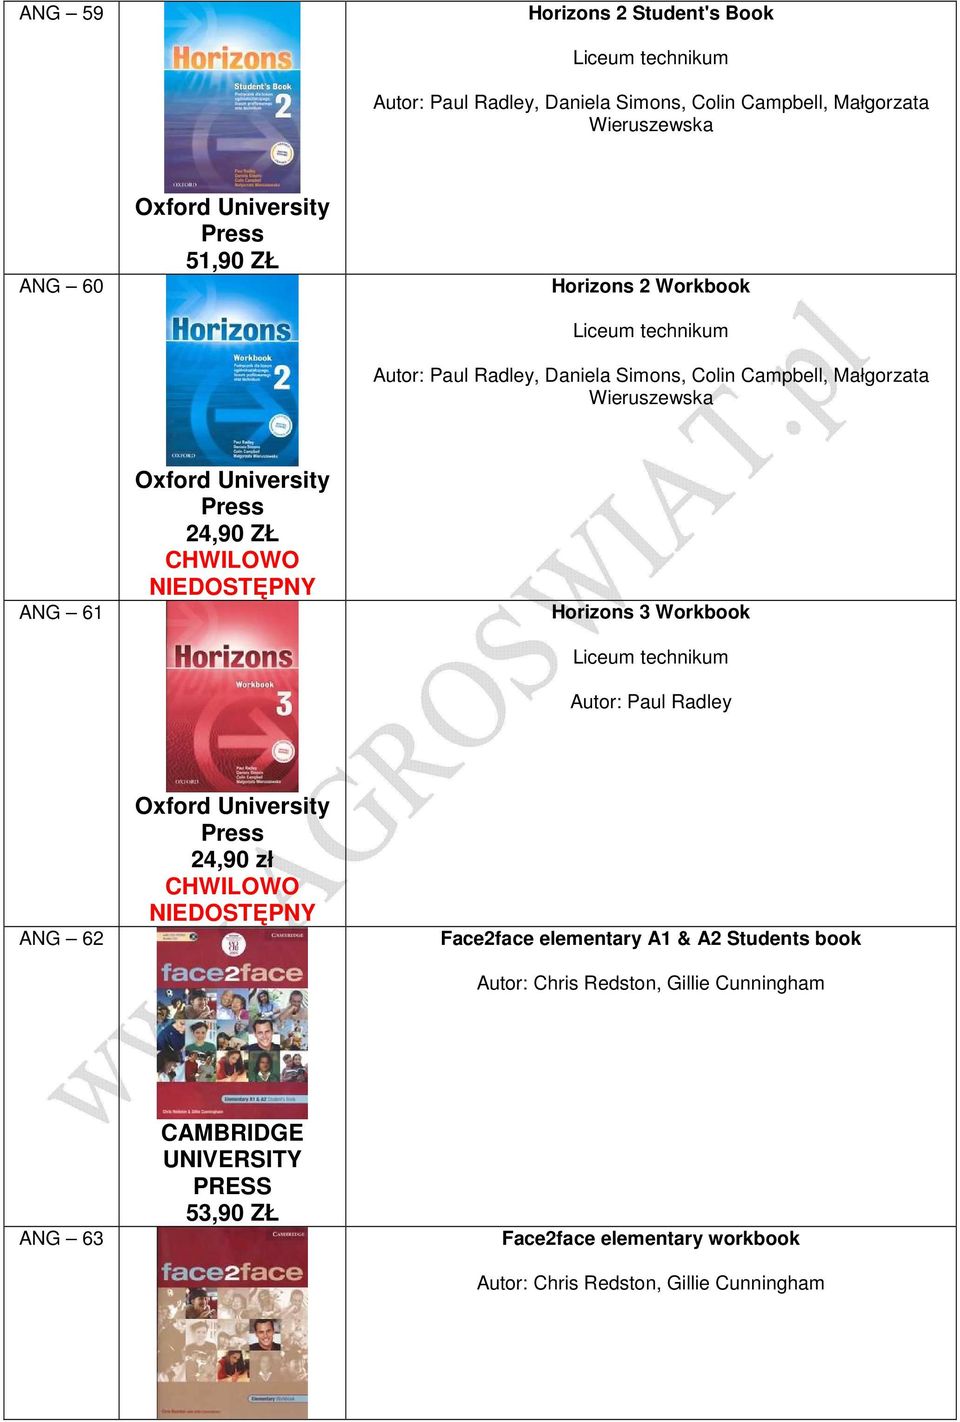 CHWILOWO NIEDOSTĘPNY Horizons 3 Workbook Liceum technikum Autor: Paul Radley ANG 62 24,90 zł CHWILOWO NIEDOSTĘPNY Face2face elementary A1